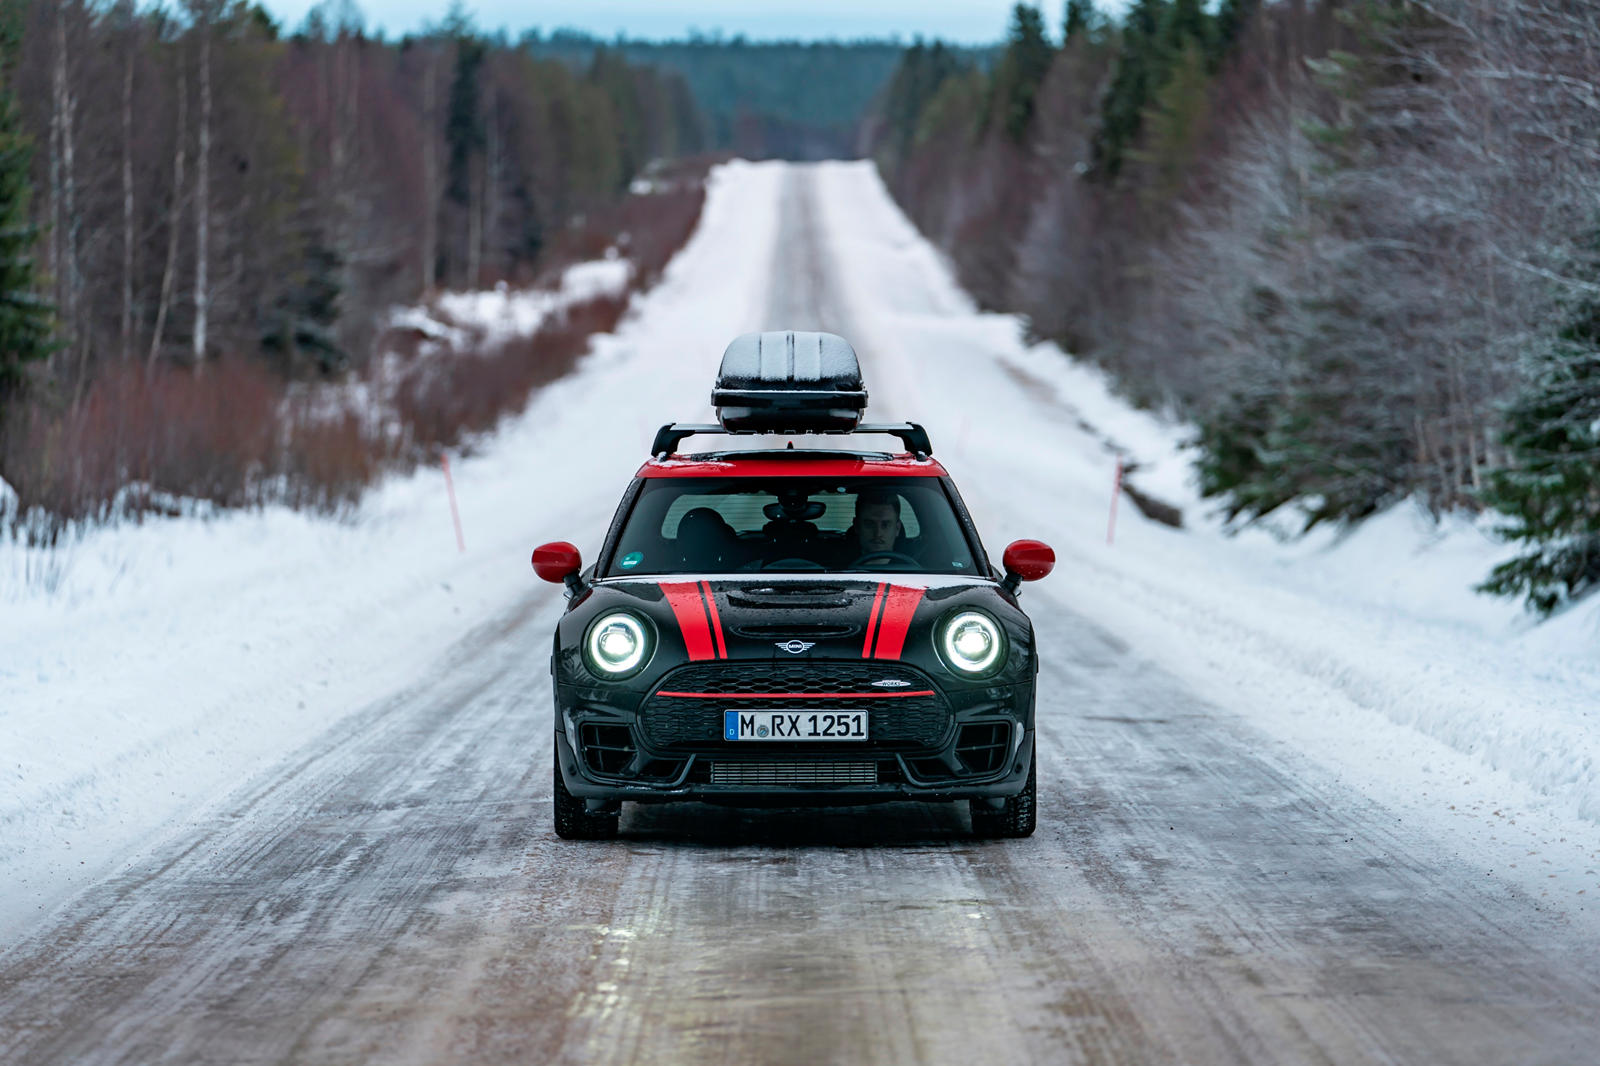 В Лапландии несколько производителей, включая BMW, проводят испытания в холодную погоду. Однако Финляндия также является эпицентром автоспортивного наследия Лапландии. Здесь находится автомобильный музей Mobilia, в том числе Музей ралли и Зал славы р